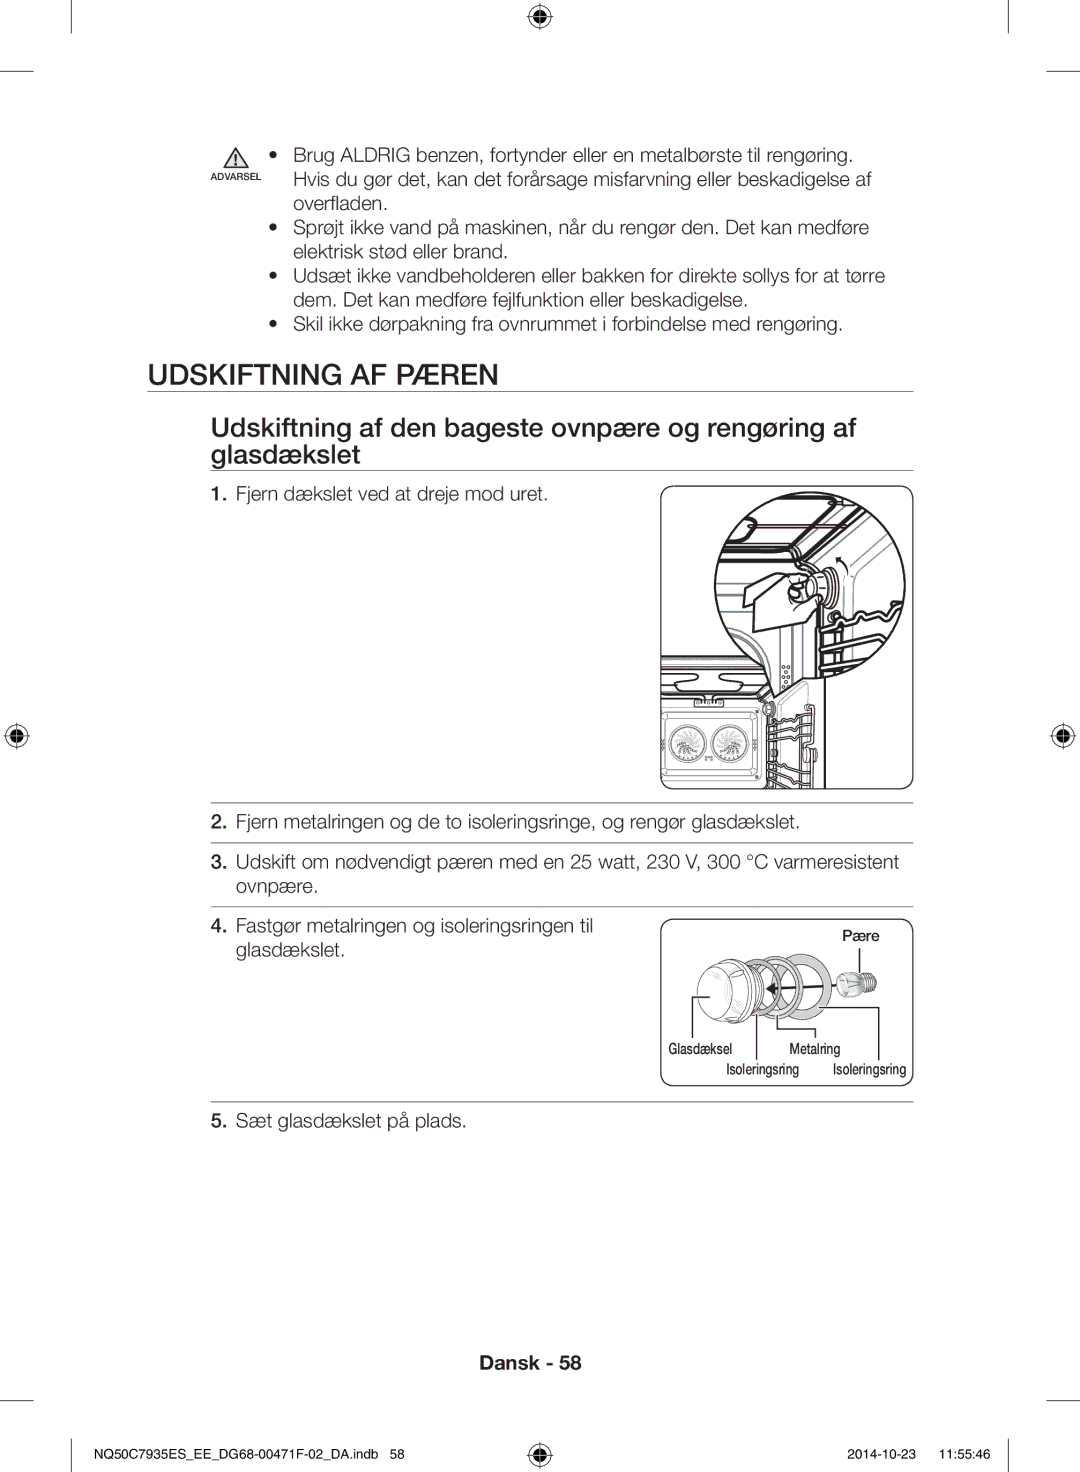 Samsung NQ50C7935ES/EE manual Udskiftning af pæren, Overfladen, Glasdækslet, Sæt glasdækslet på plads 